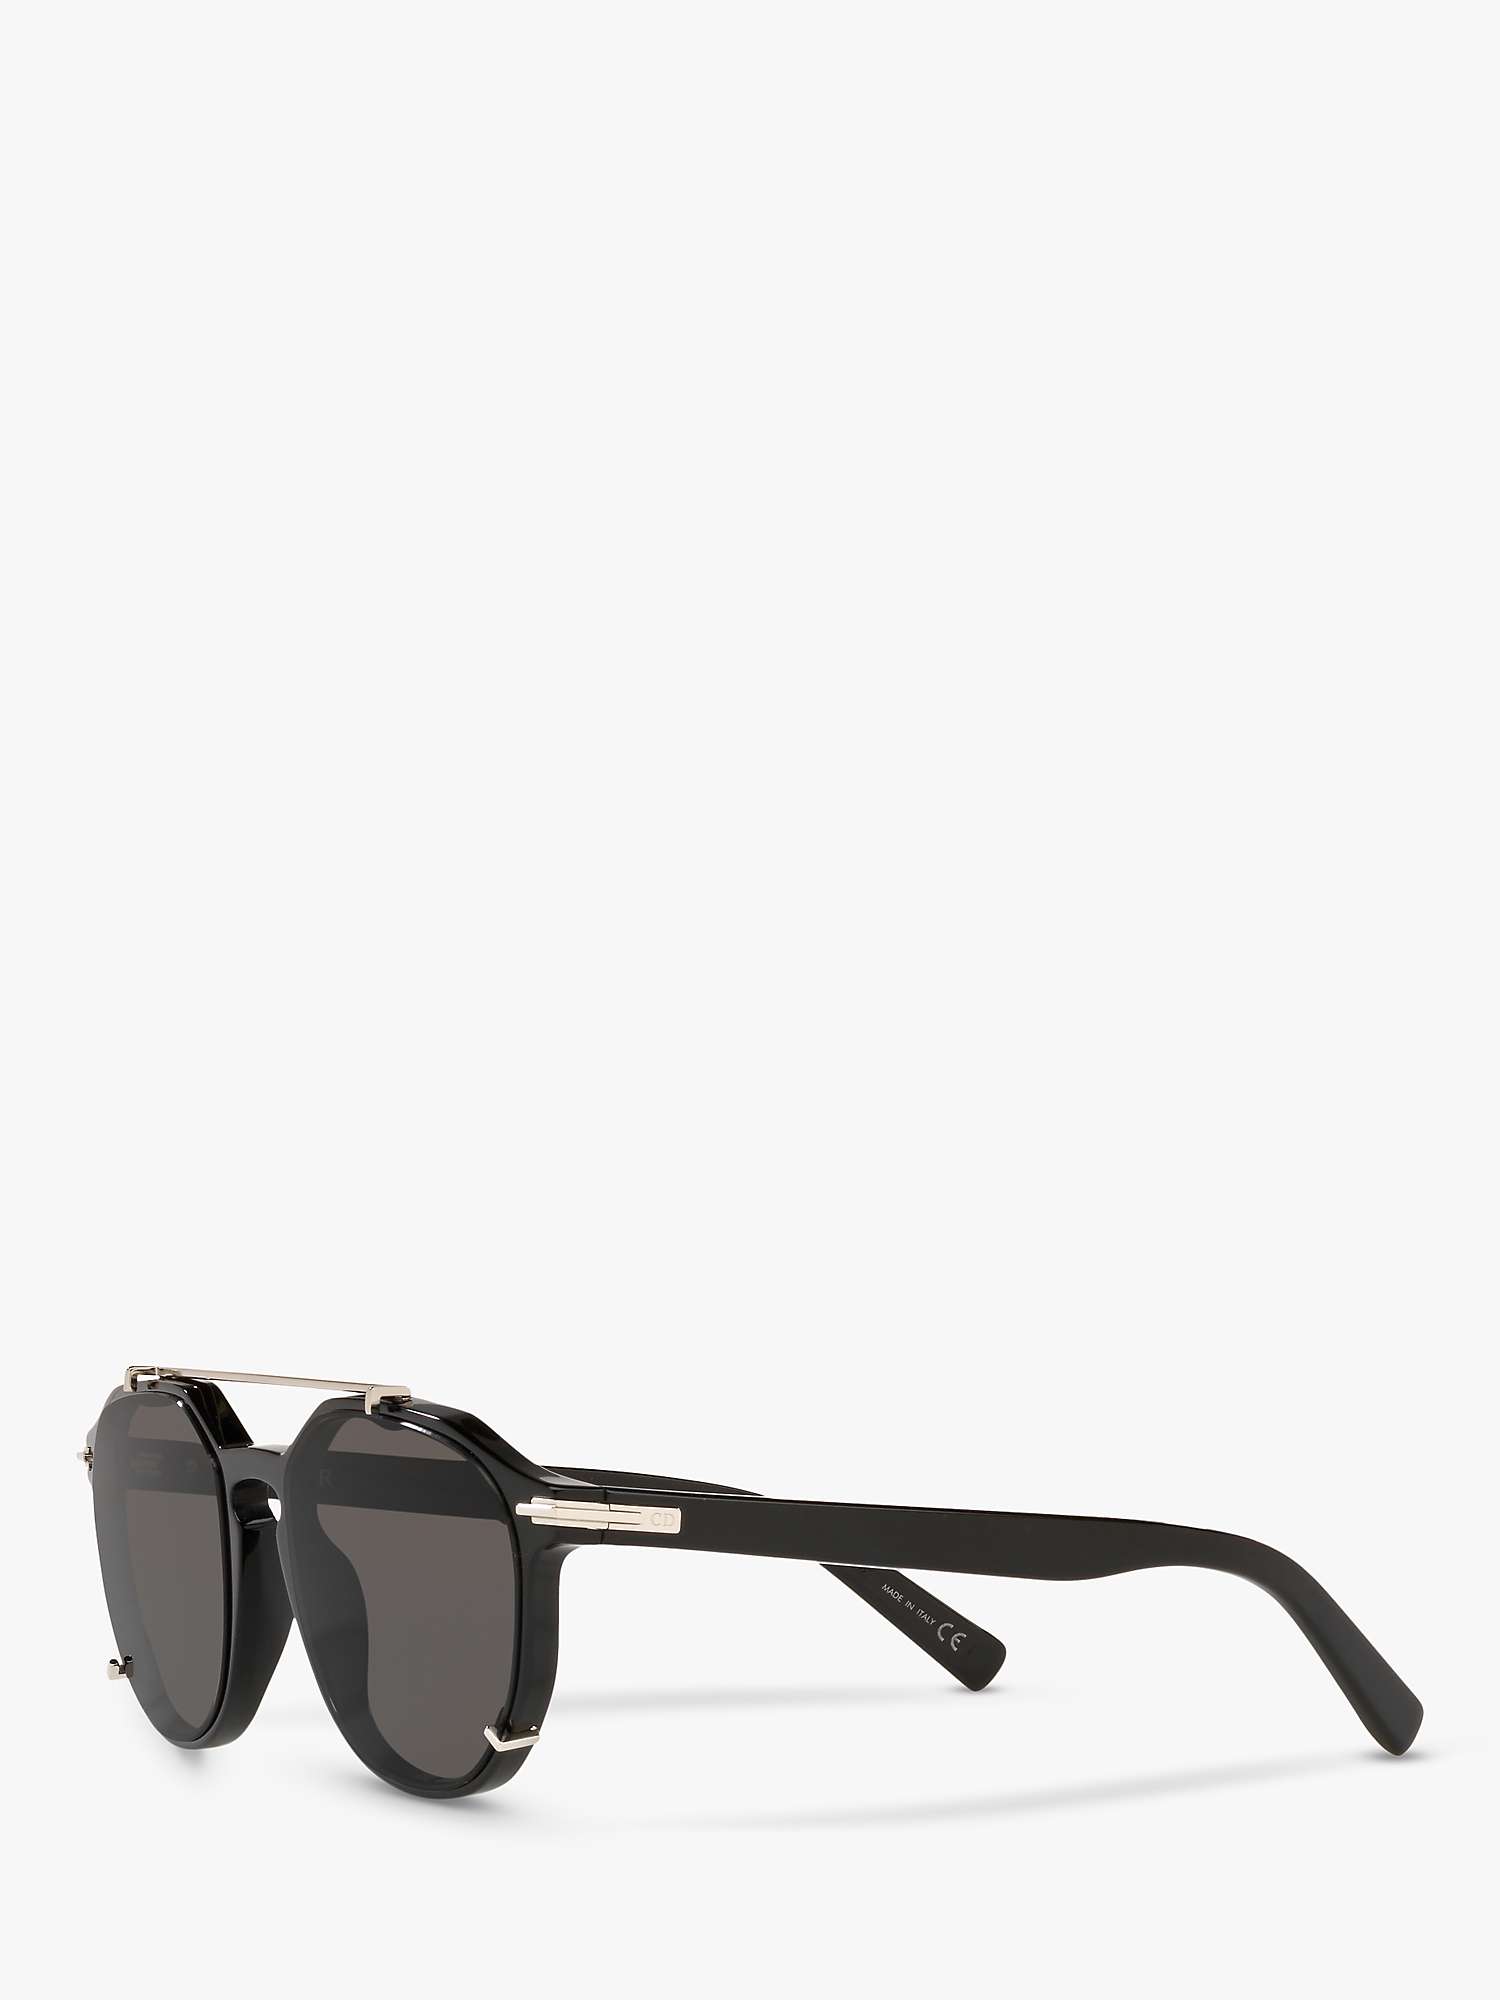 Buy DIOR DIORBlackSuit RI Men's Round Sunglasses Online at johnlewis.com